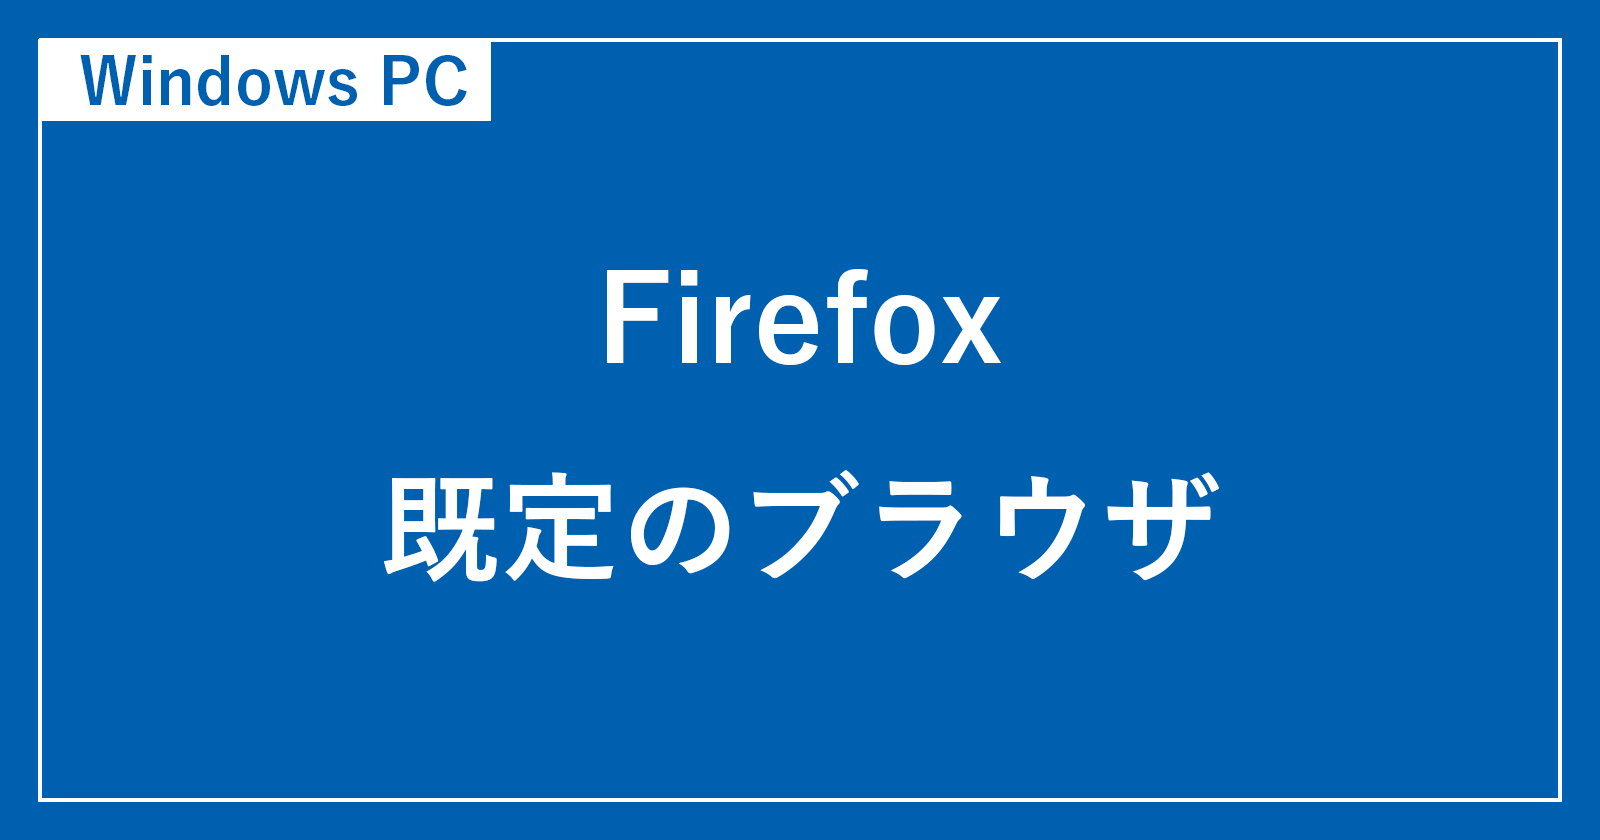 firefox default browser